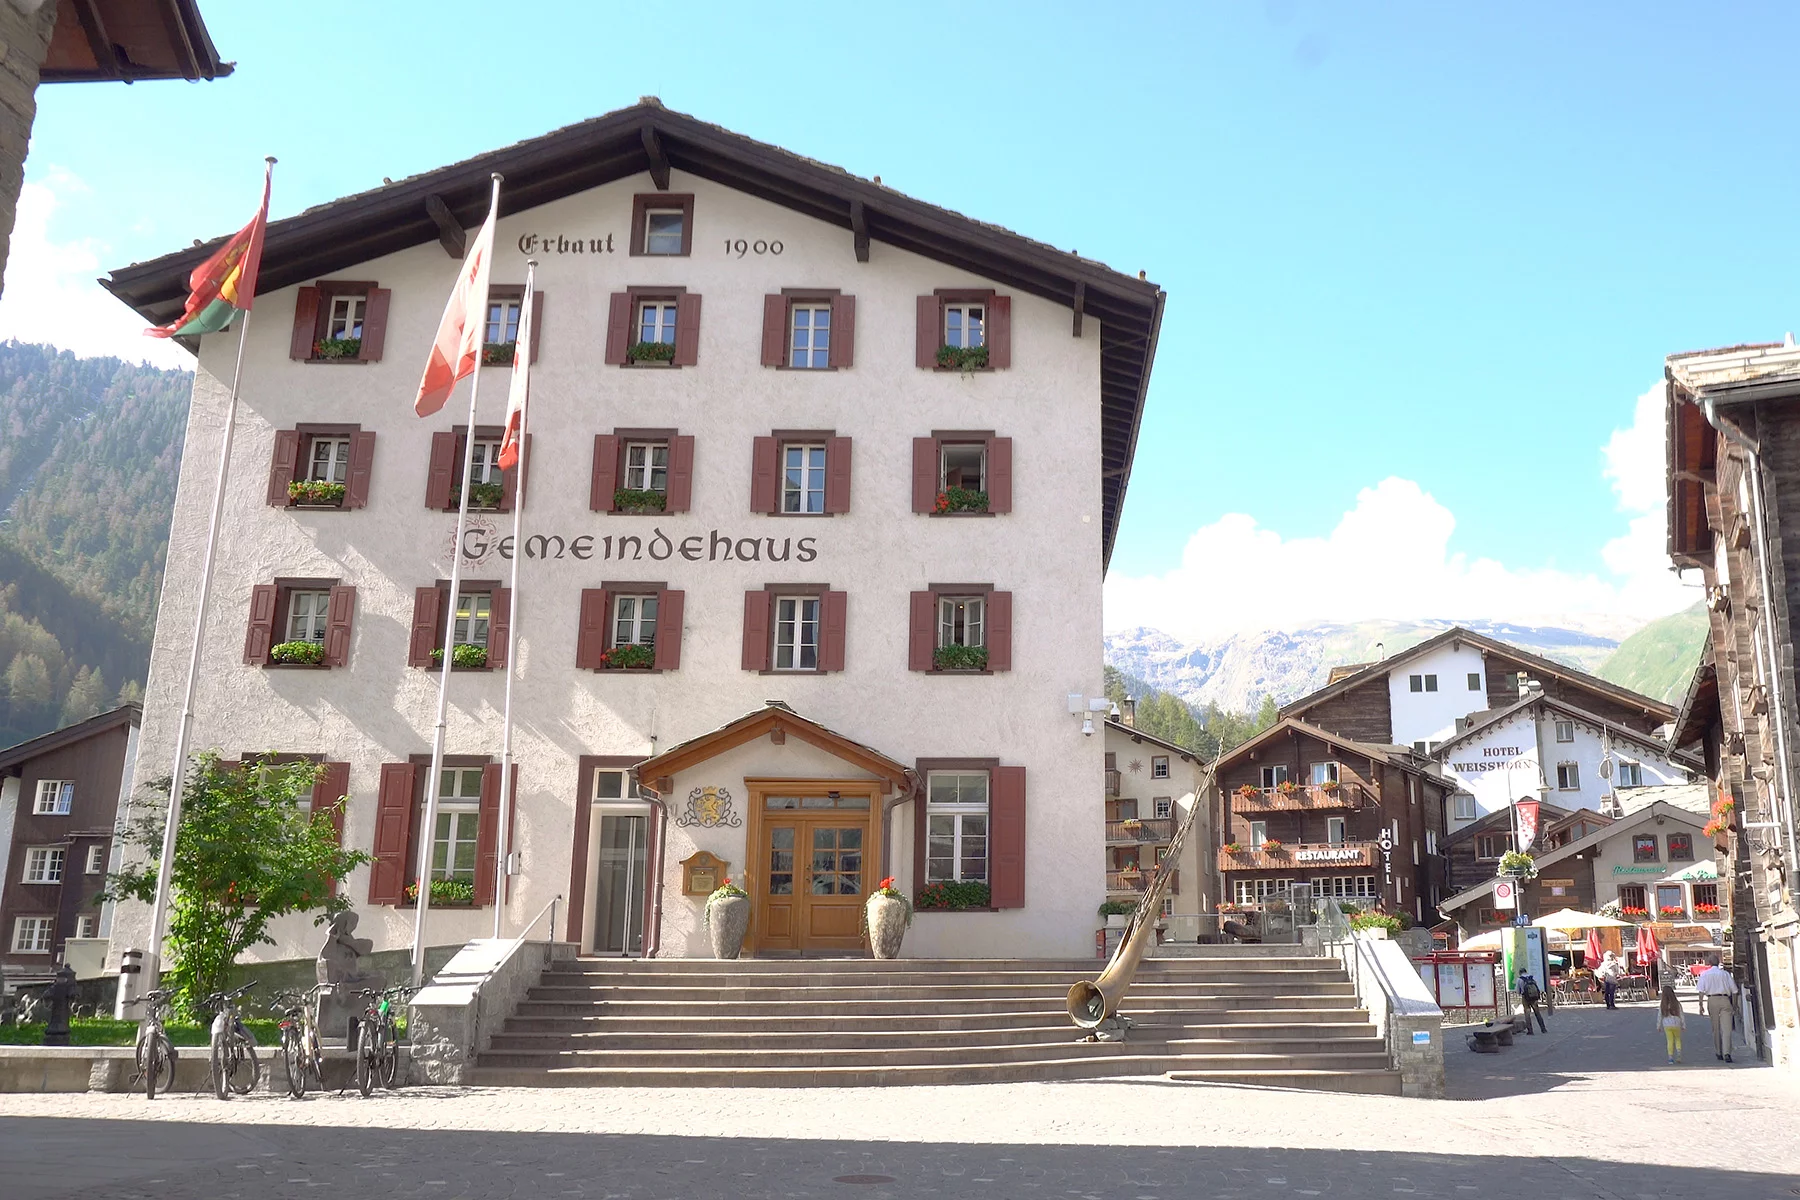 Registering your address in Switzerland at the Gemeindehaus